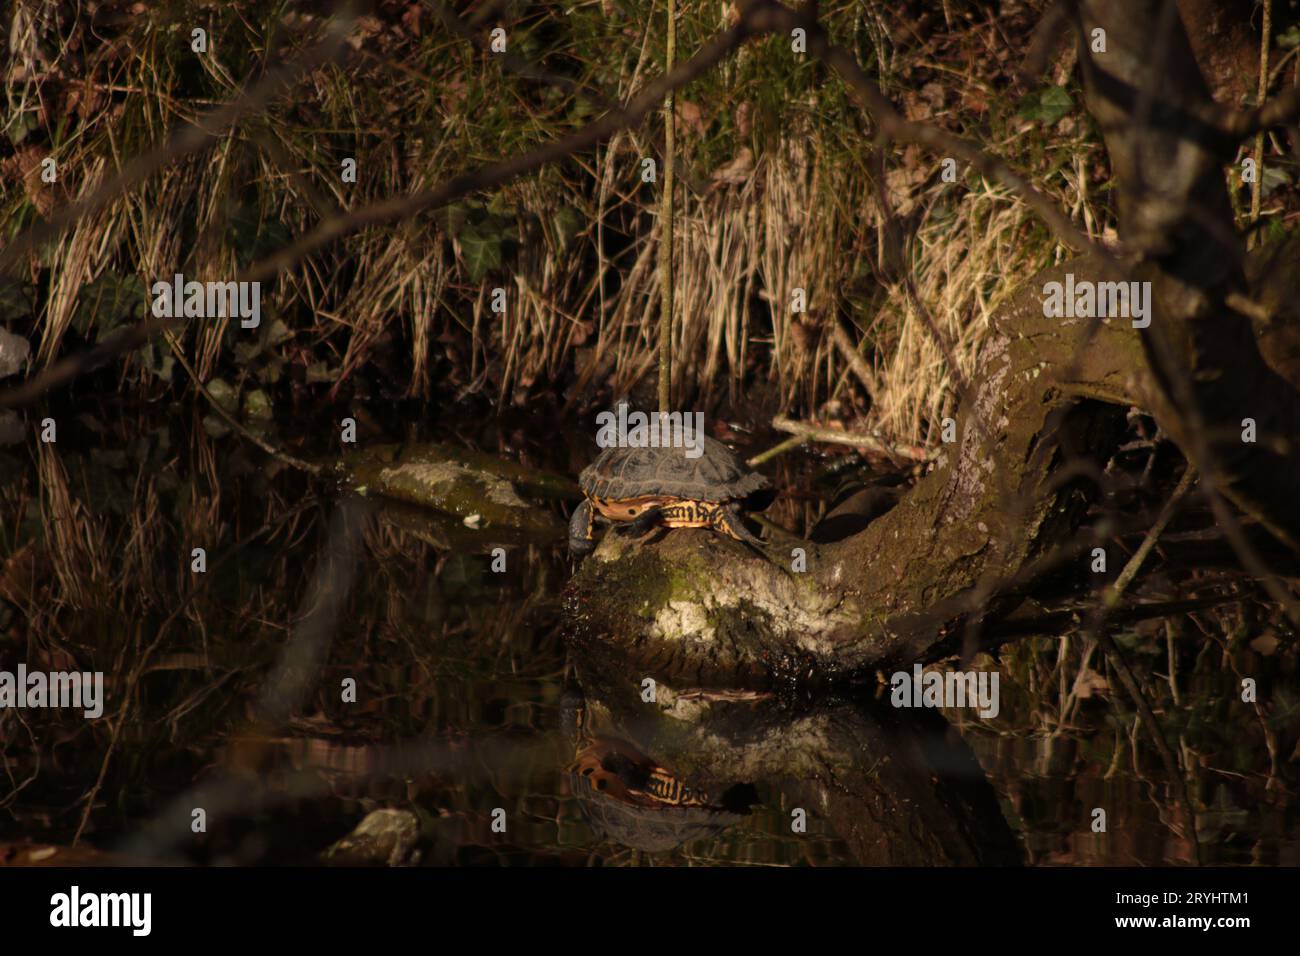 Eine Gelbbbauchschildkröte oder Terrapin befindet sich auf dem Stamm eines gefallenen Baumes, der im Süßwasserkanal neben einem grasbewachsenen Flussufer bei Sonnenbaden liegt. Stockfoto